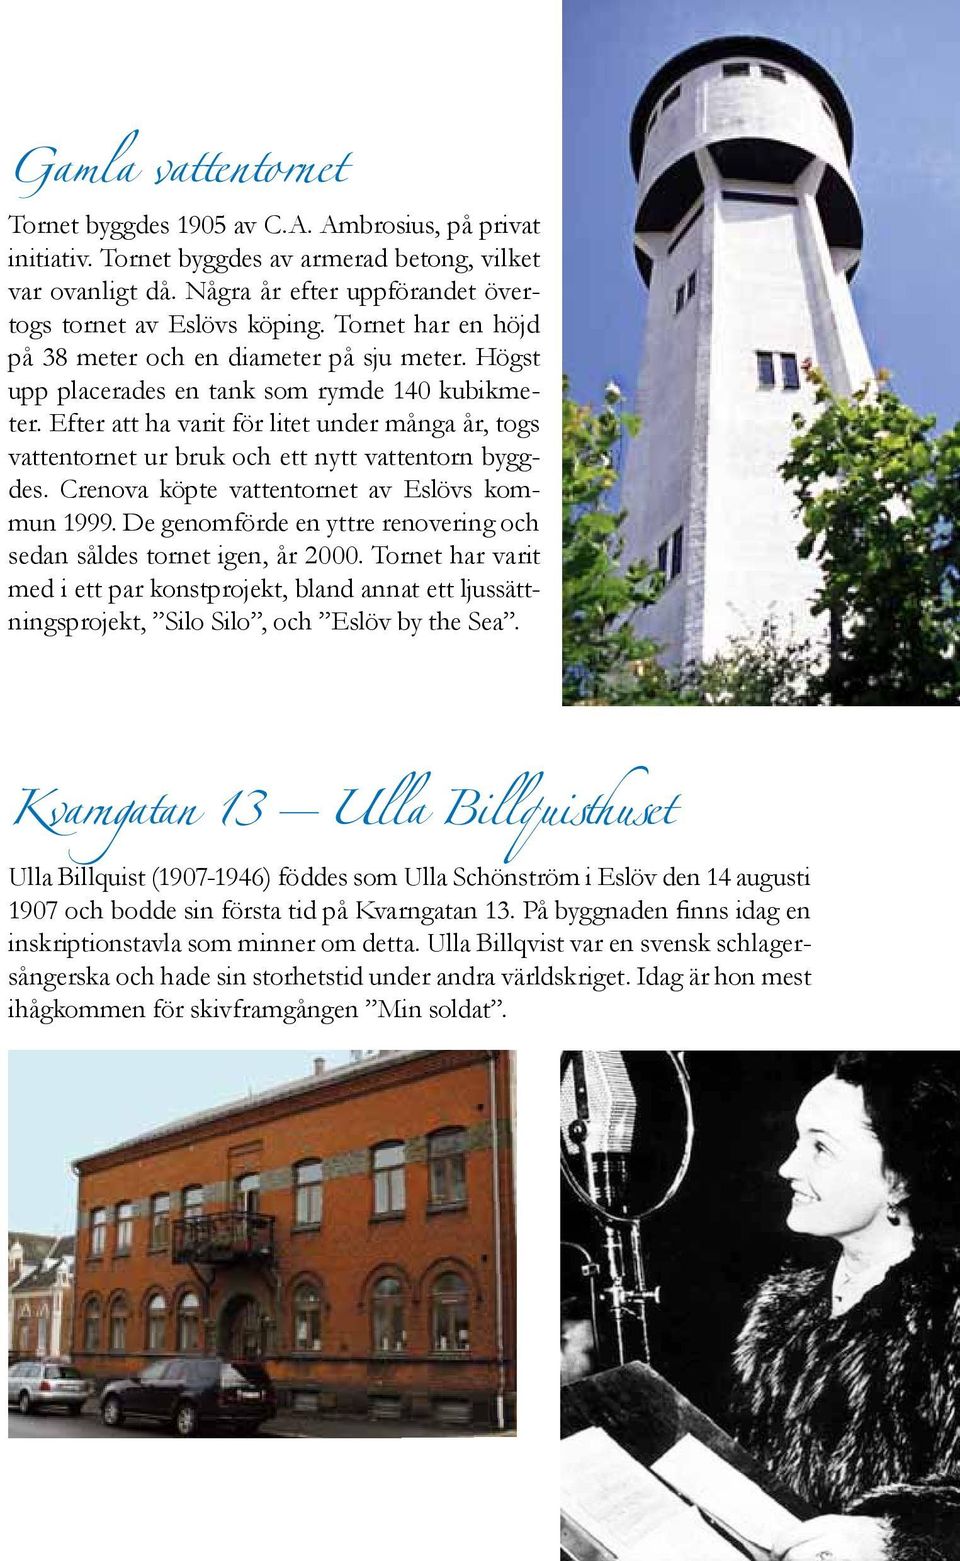 Efter att ha varit för litet under många år, togs vattentornet ur bruk och ett nytt vattentorn byggdes. Crenova köpte vattentornet av Eslövs kommun 1999.